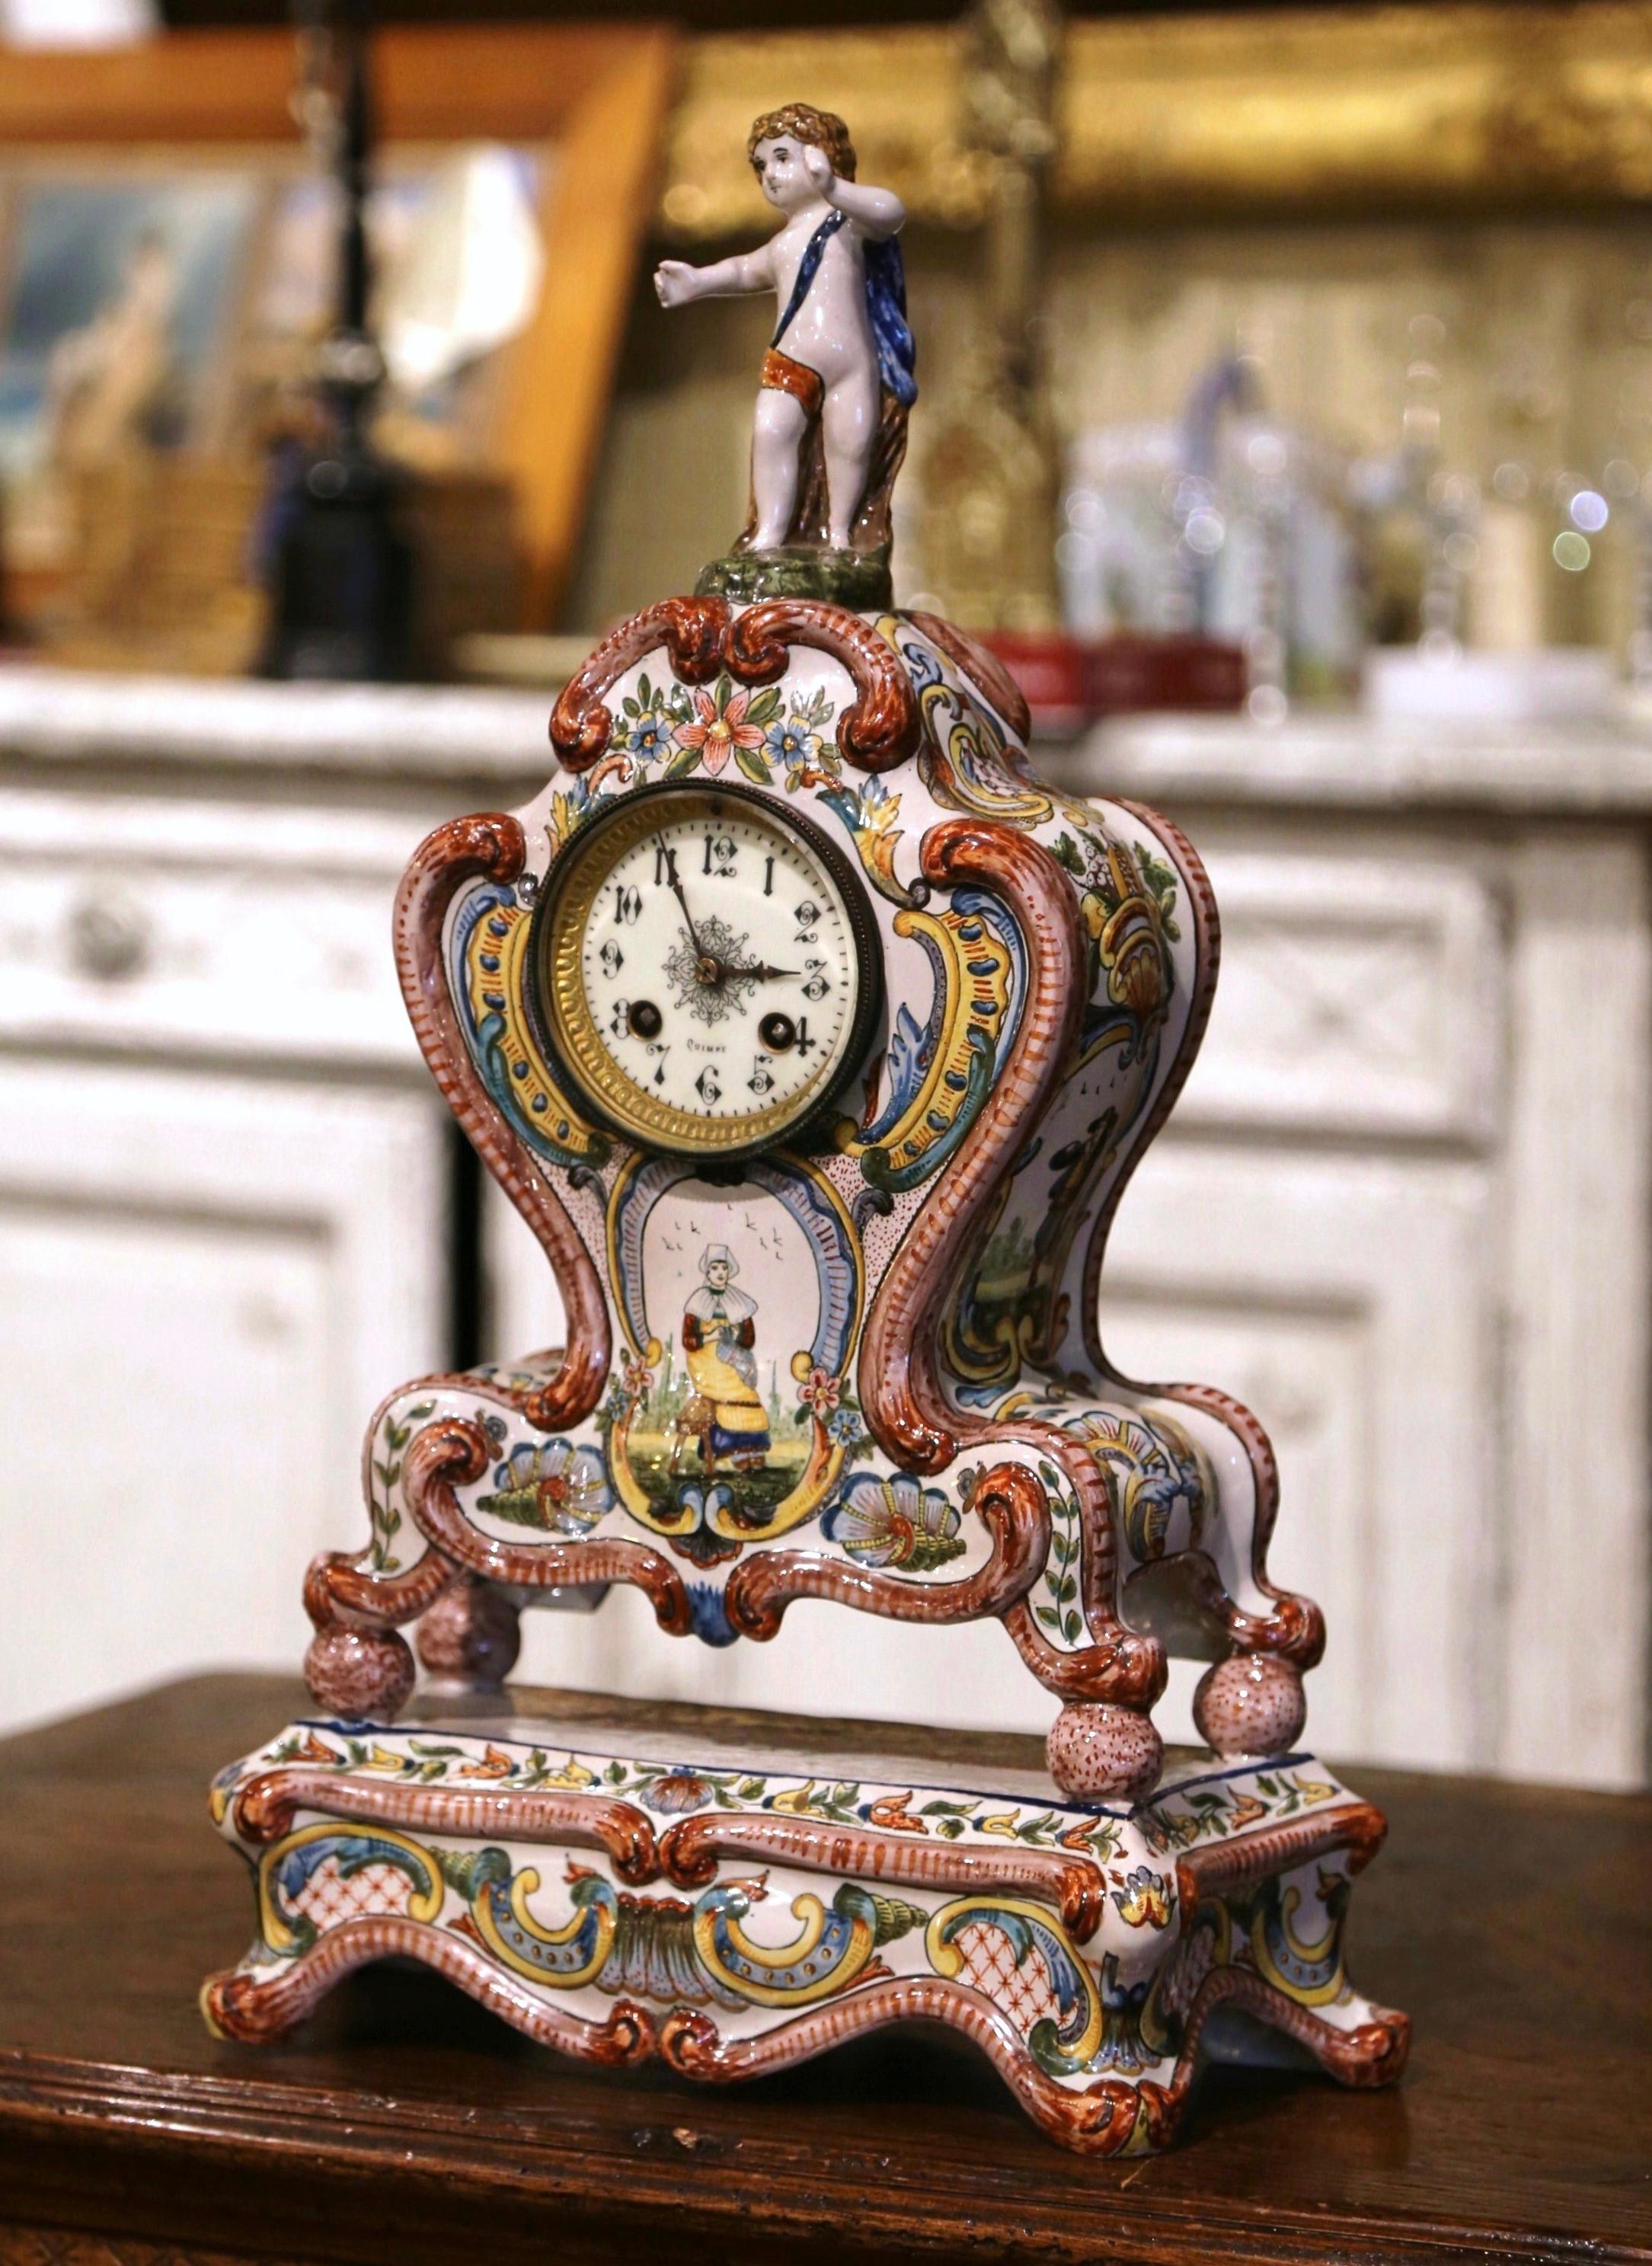 Dekorieren Sie einen Kaminsims oder ein Regal mit dieser eleganten und farbenfrohen antiken Uhr. Die um 1890 in der Bretagne in Frankreich hergestellte Keramikuhr steht auf einem Sockel mit Schneckenfüßen, der sich über einer bombierten Front mit